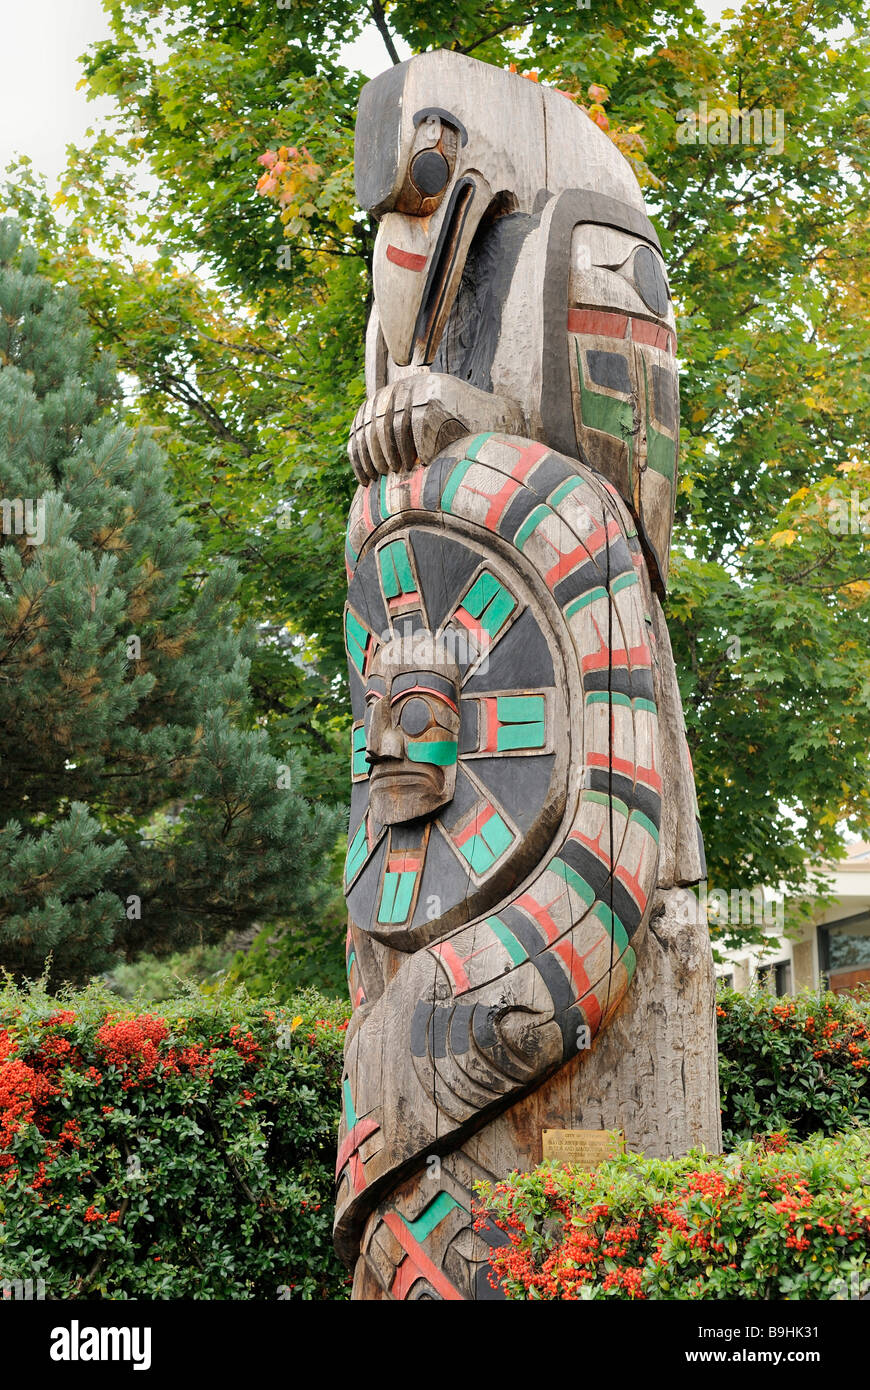 Totem de la tribu Cowichan, Duncan, île de Vancouver, Colombie-Britannique, Canada, Amérique du Nord Banque D'Images